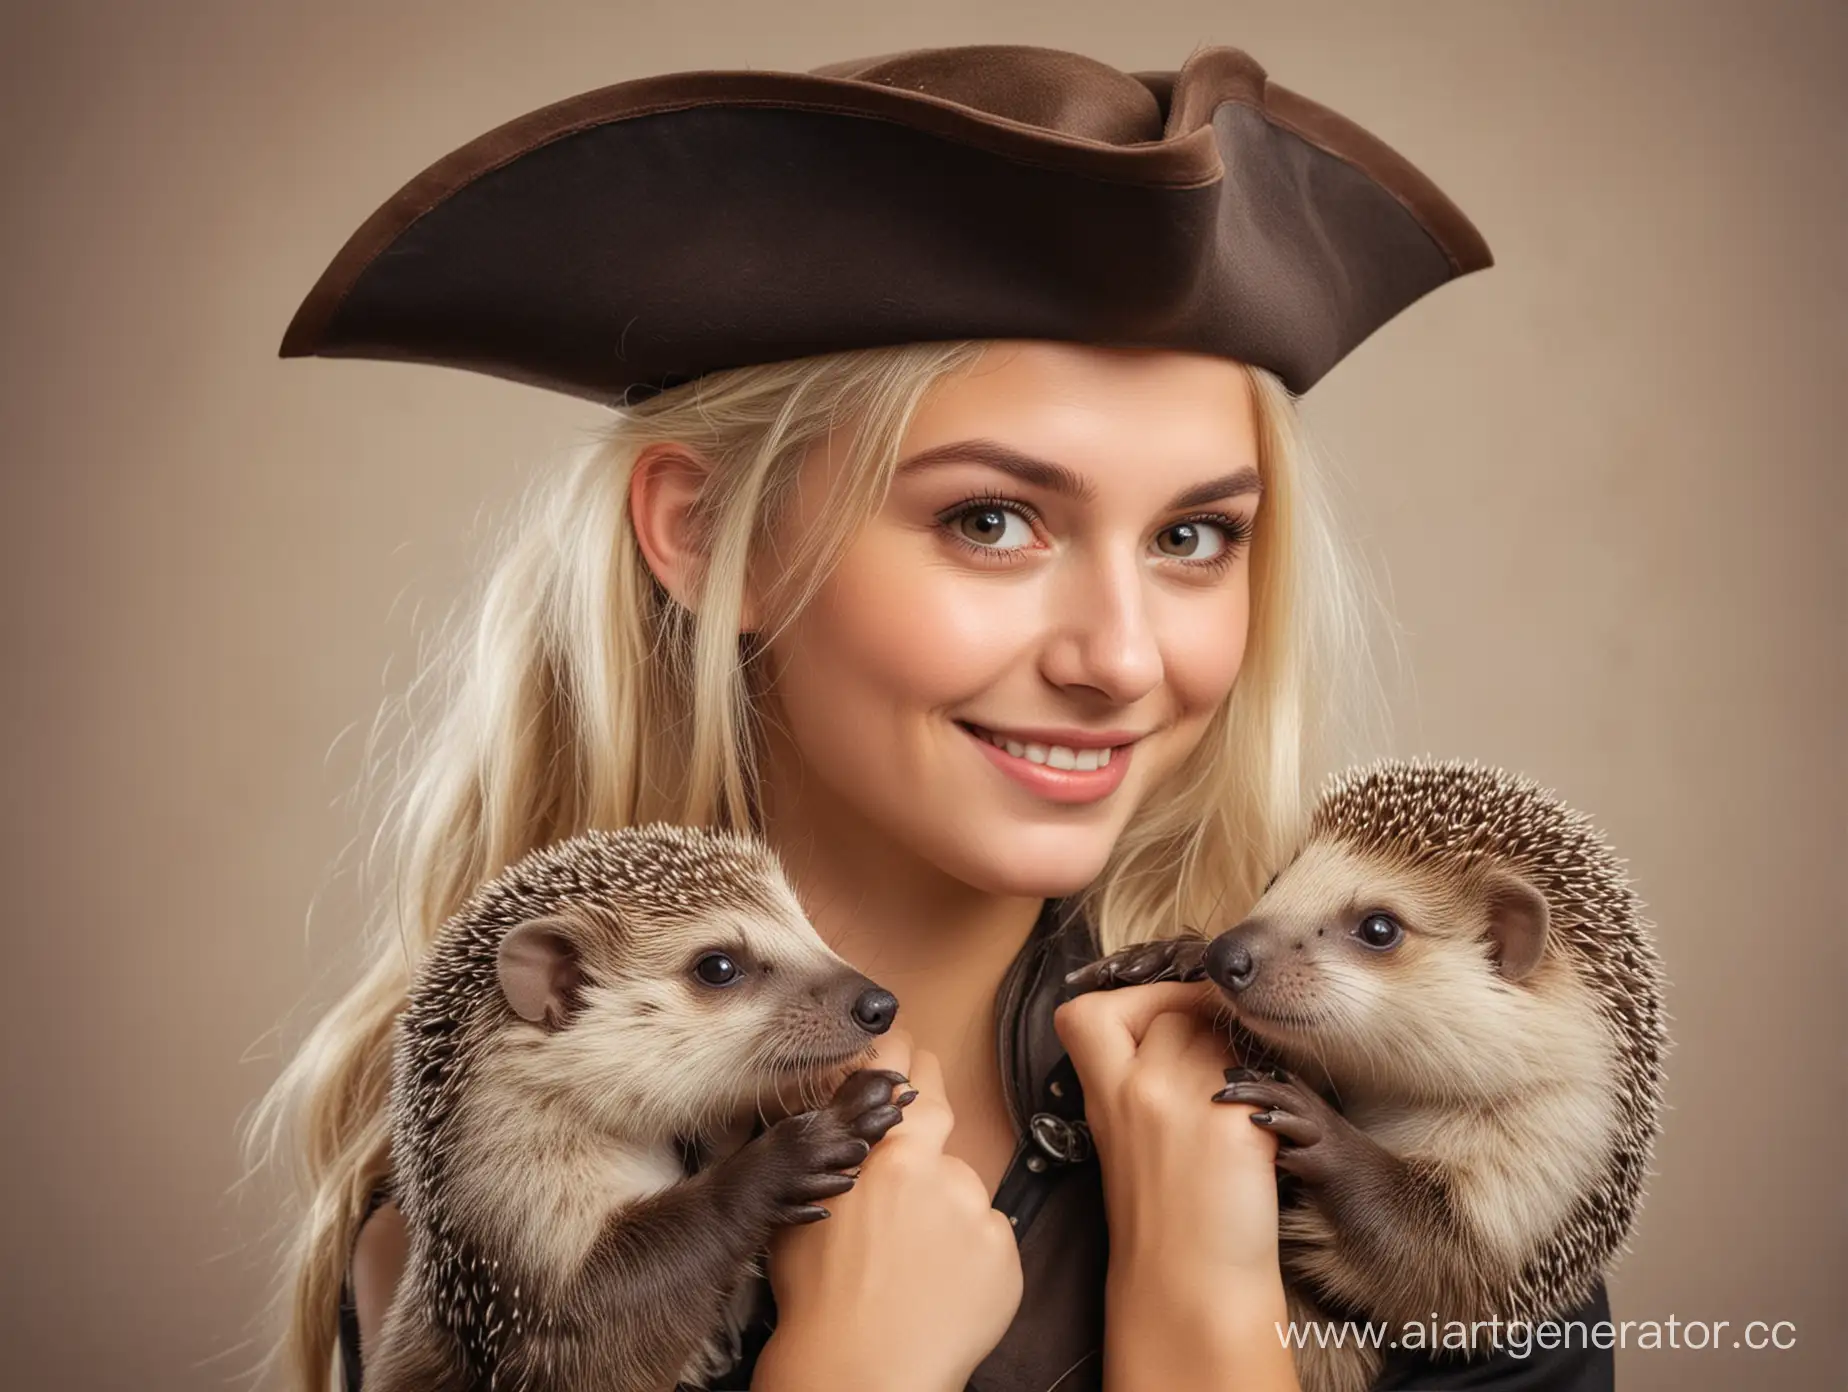 красивая девушка-блондинка, в руках милая выдра, на плече ёжик в маленькой пиратской шляпе